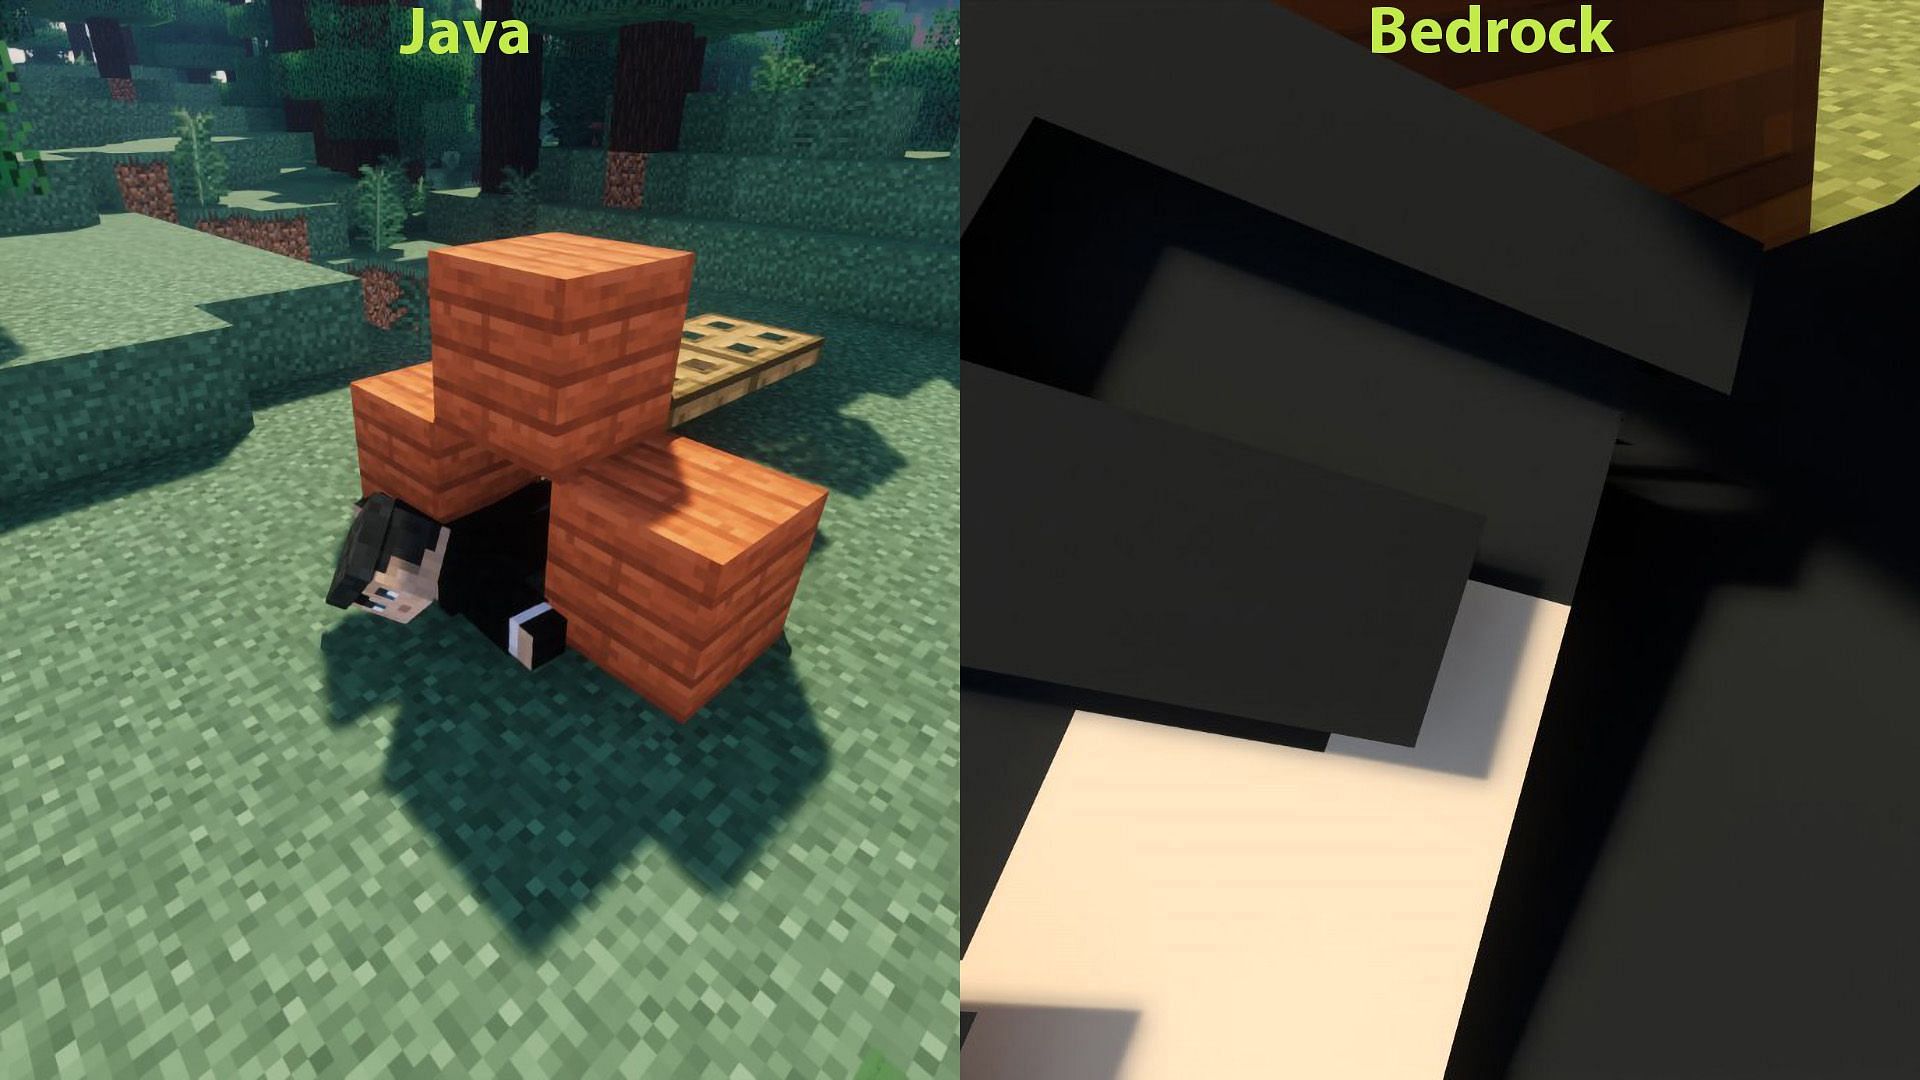 Difference in the camera interpolation at a similar angle between Java and Bedrock (Image via Mojang Studios)